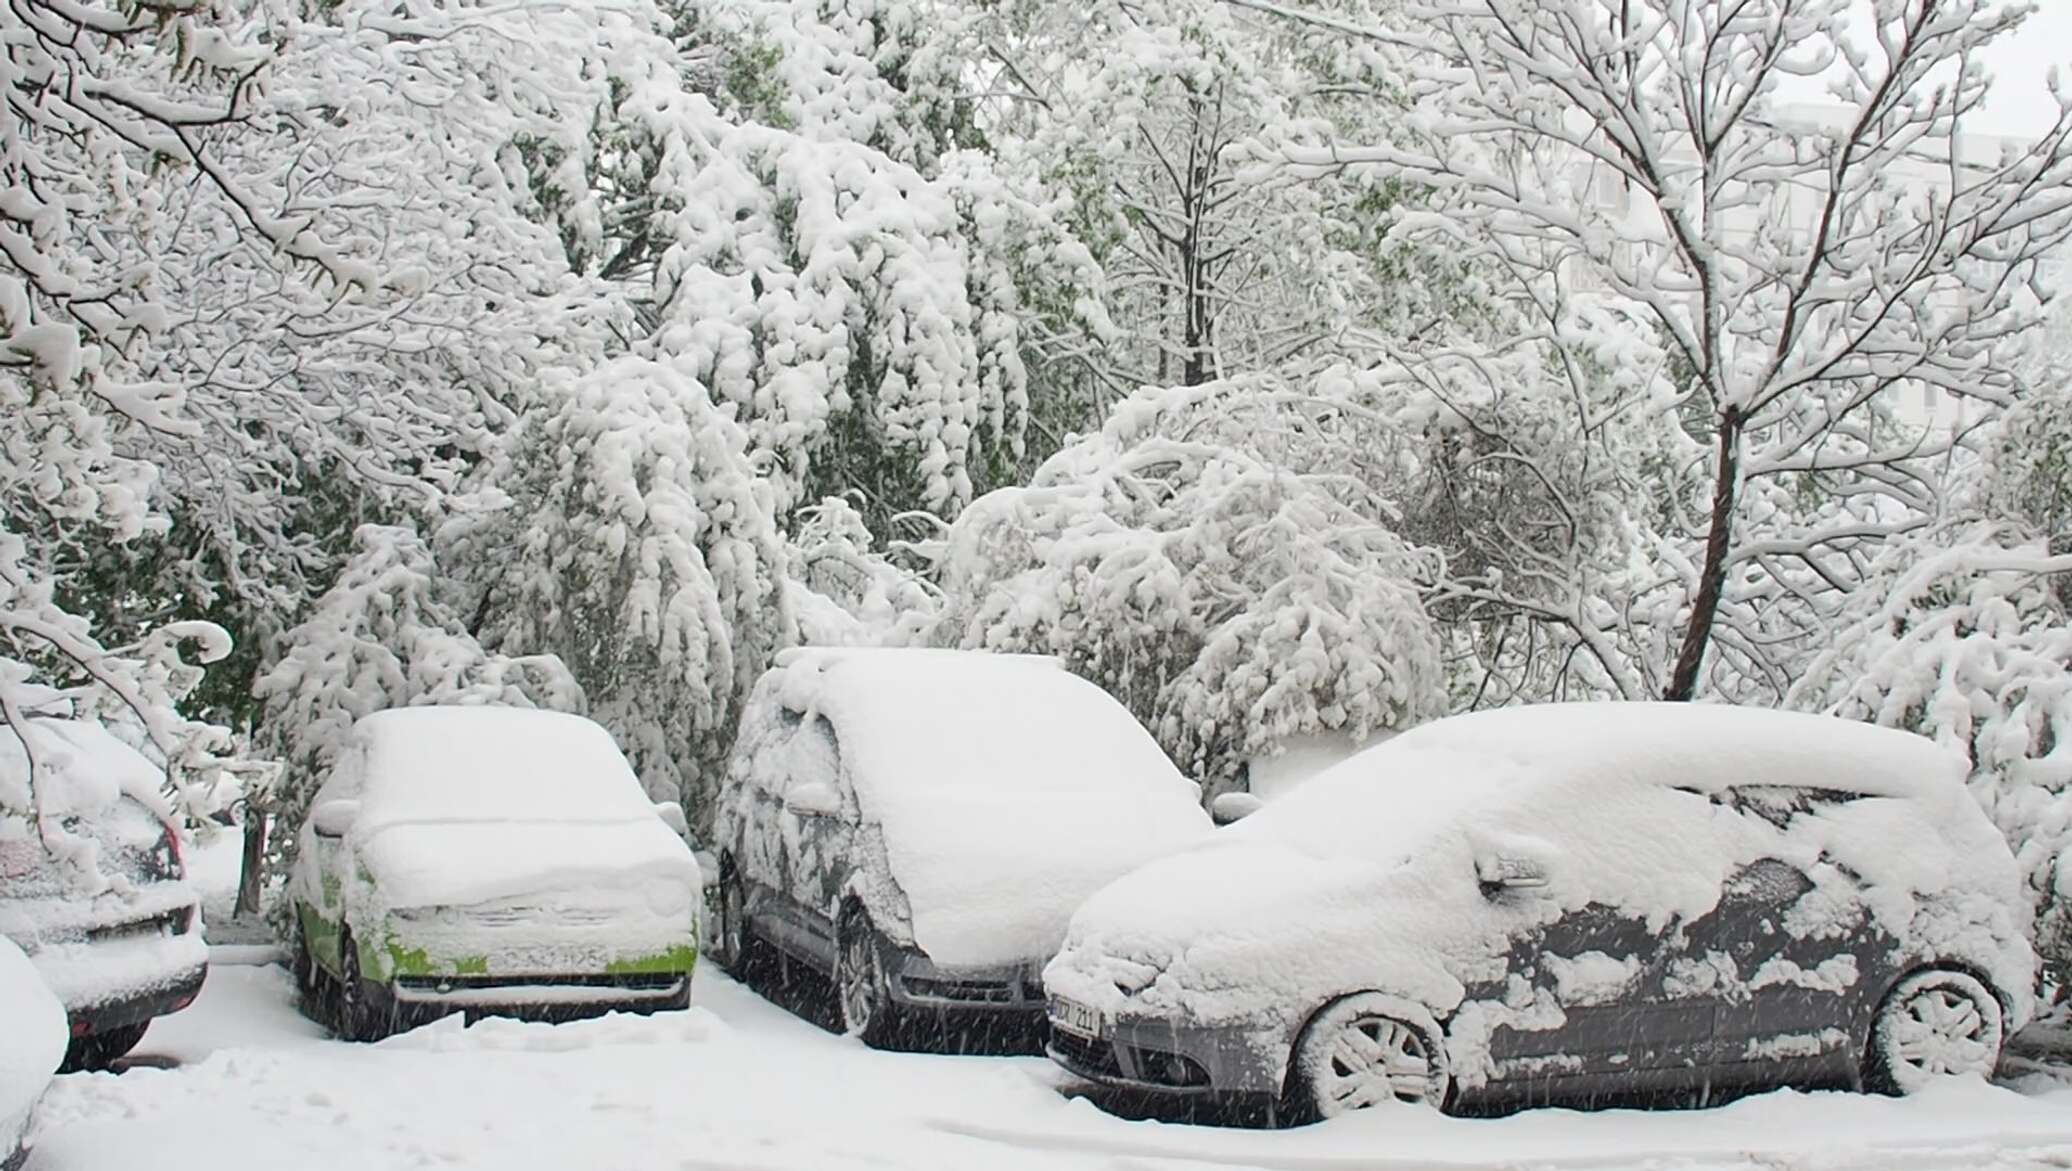 Погода в кишиневе сегодня. Снегопад в апреле в Молдове. Снегопад в Кишиневе 2017 апрель. Самый большой снег в Молдавии. Снегопад в Молдове сегодня.